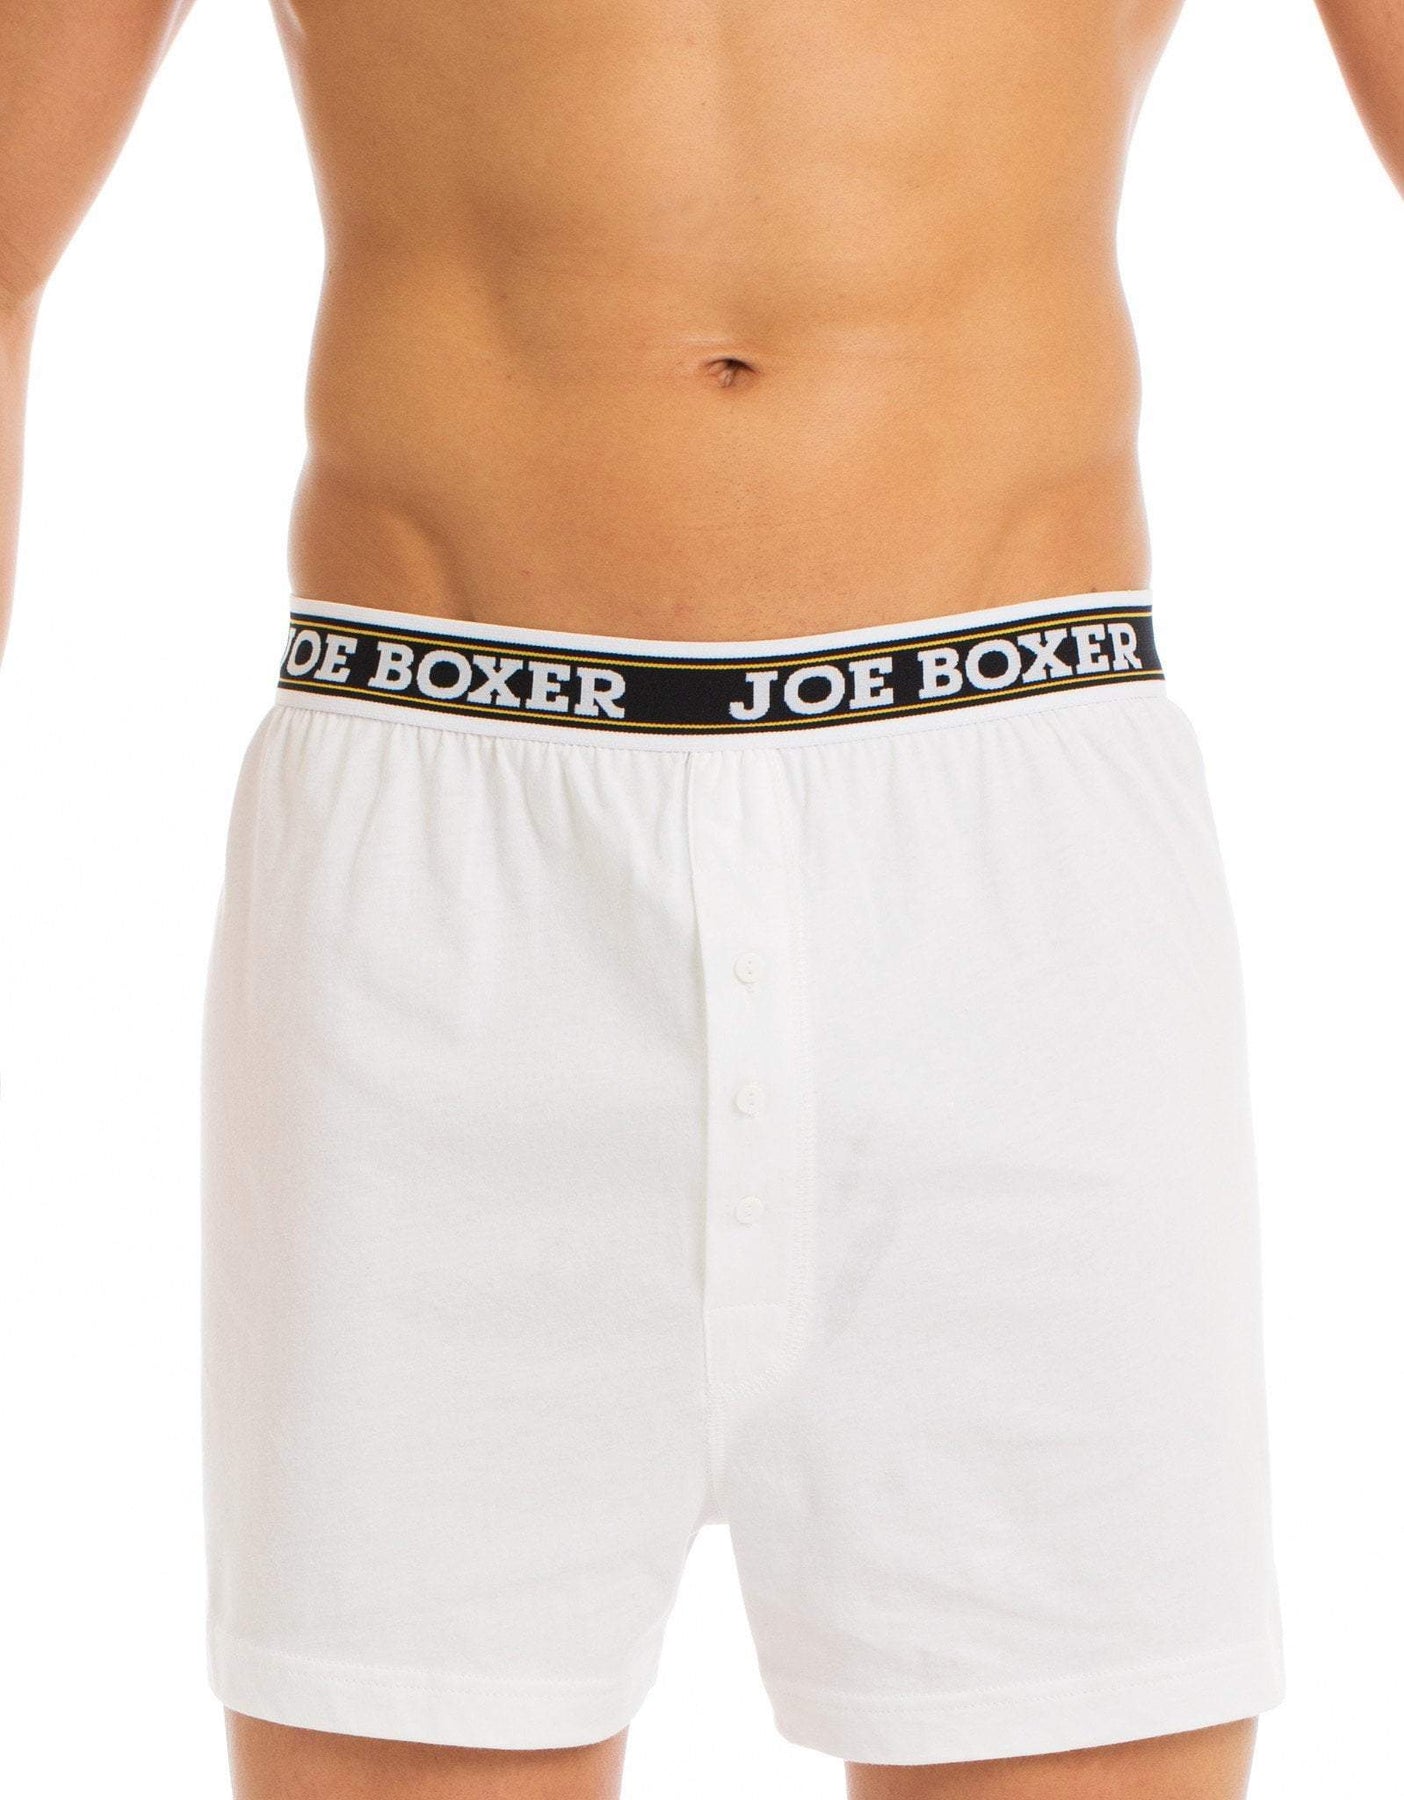 6 Mens Compression Seamless Short Boxers Briefs Comfort Flex Underwear —  AllTopBargains